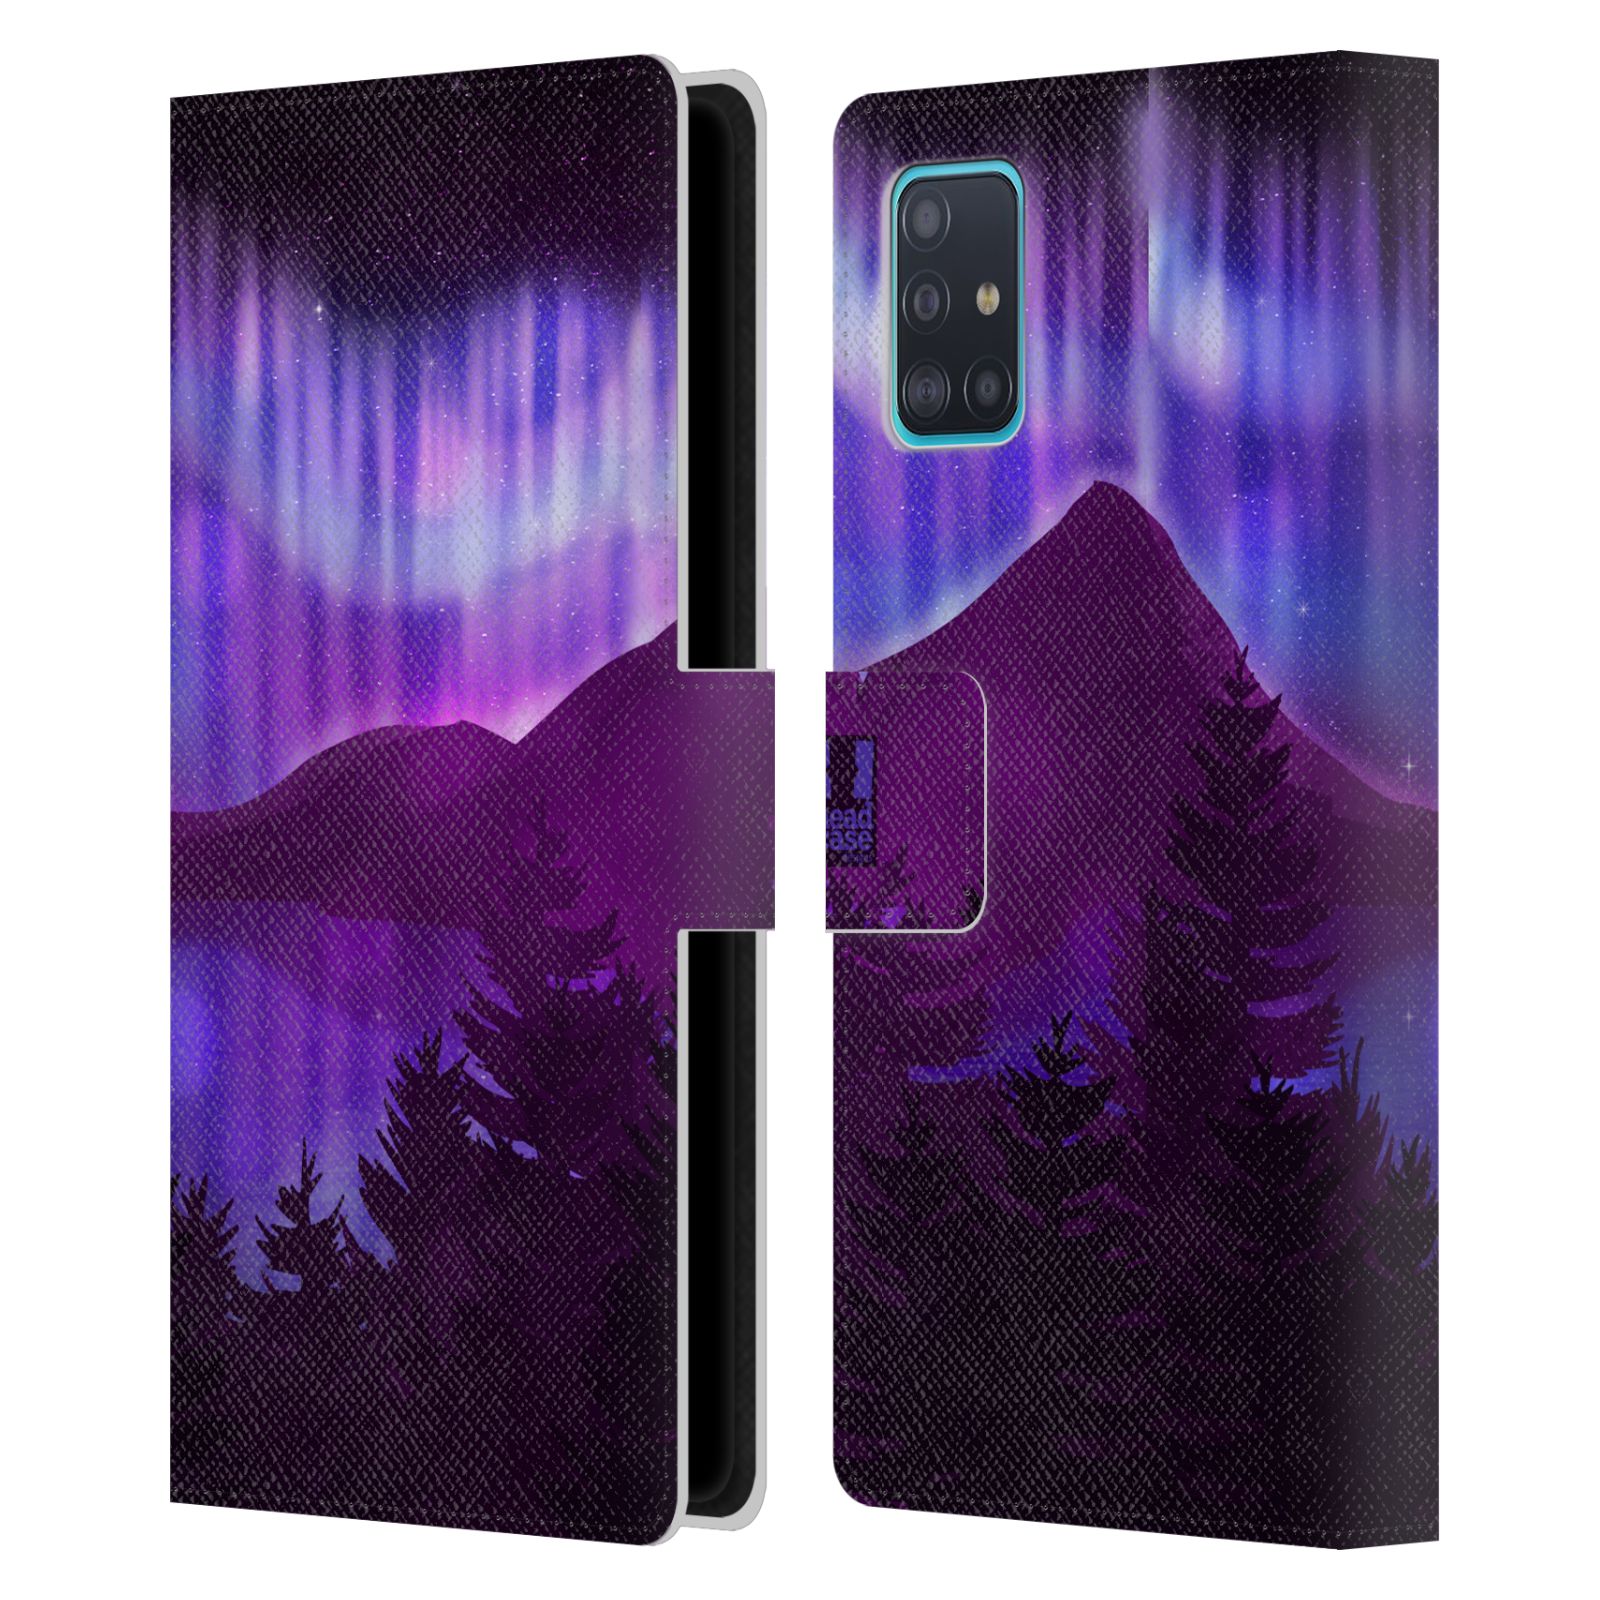 Pouzdro na mobil Samsung Galaxy A51 - HEAD CASE - Hory a lesy fialový odstín